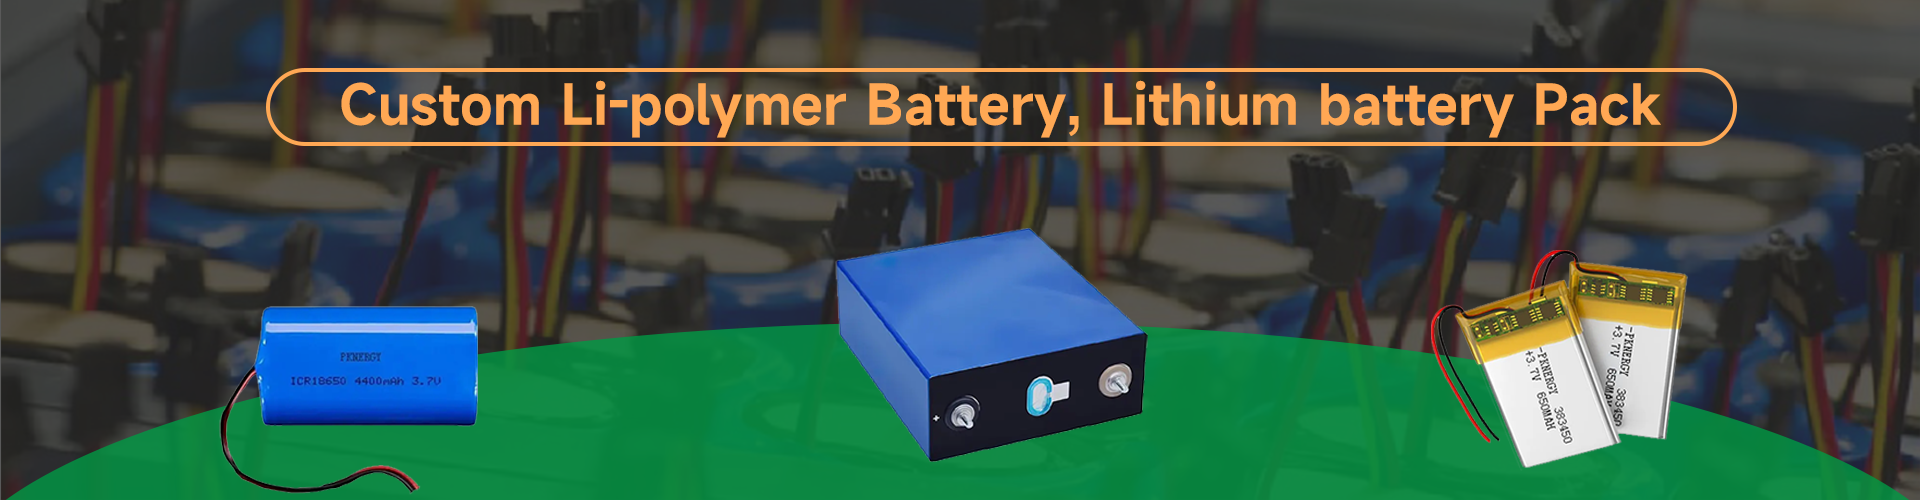 Batterie Li-polymère personnalisée et batterie lithium-ion